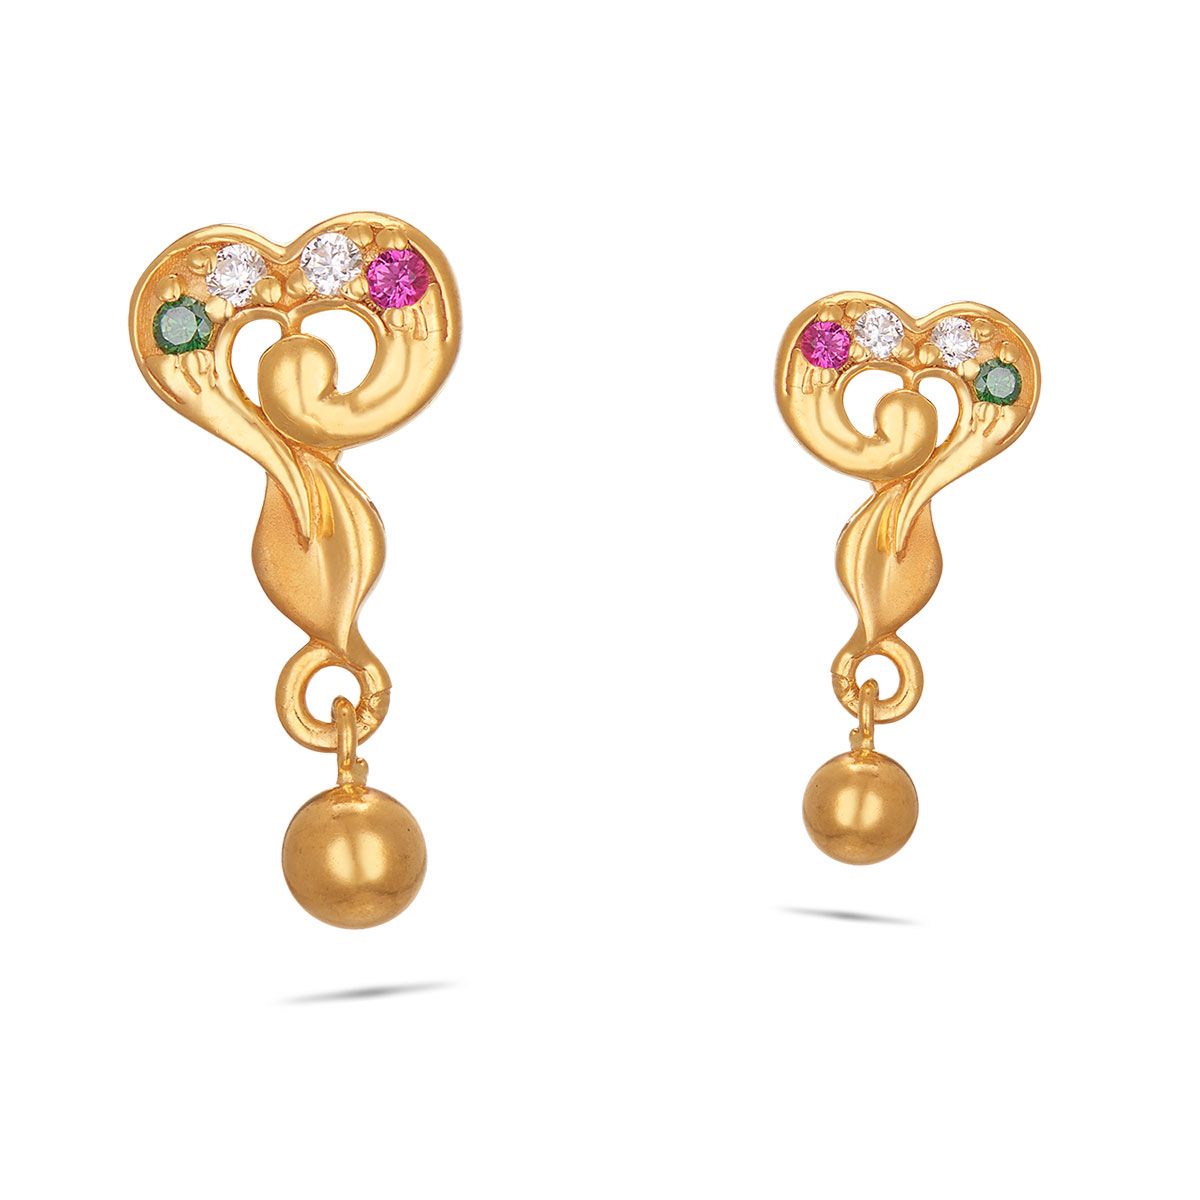 New model Gold Color Stud Earrings for girls | traditional Gold Color Stud  Earrings for Women -Traditional Gold Color Stud Earrings : Amazon.in:  Fashion